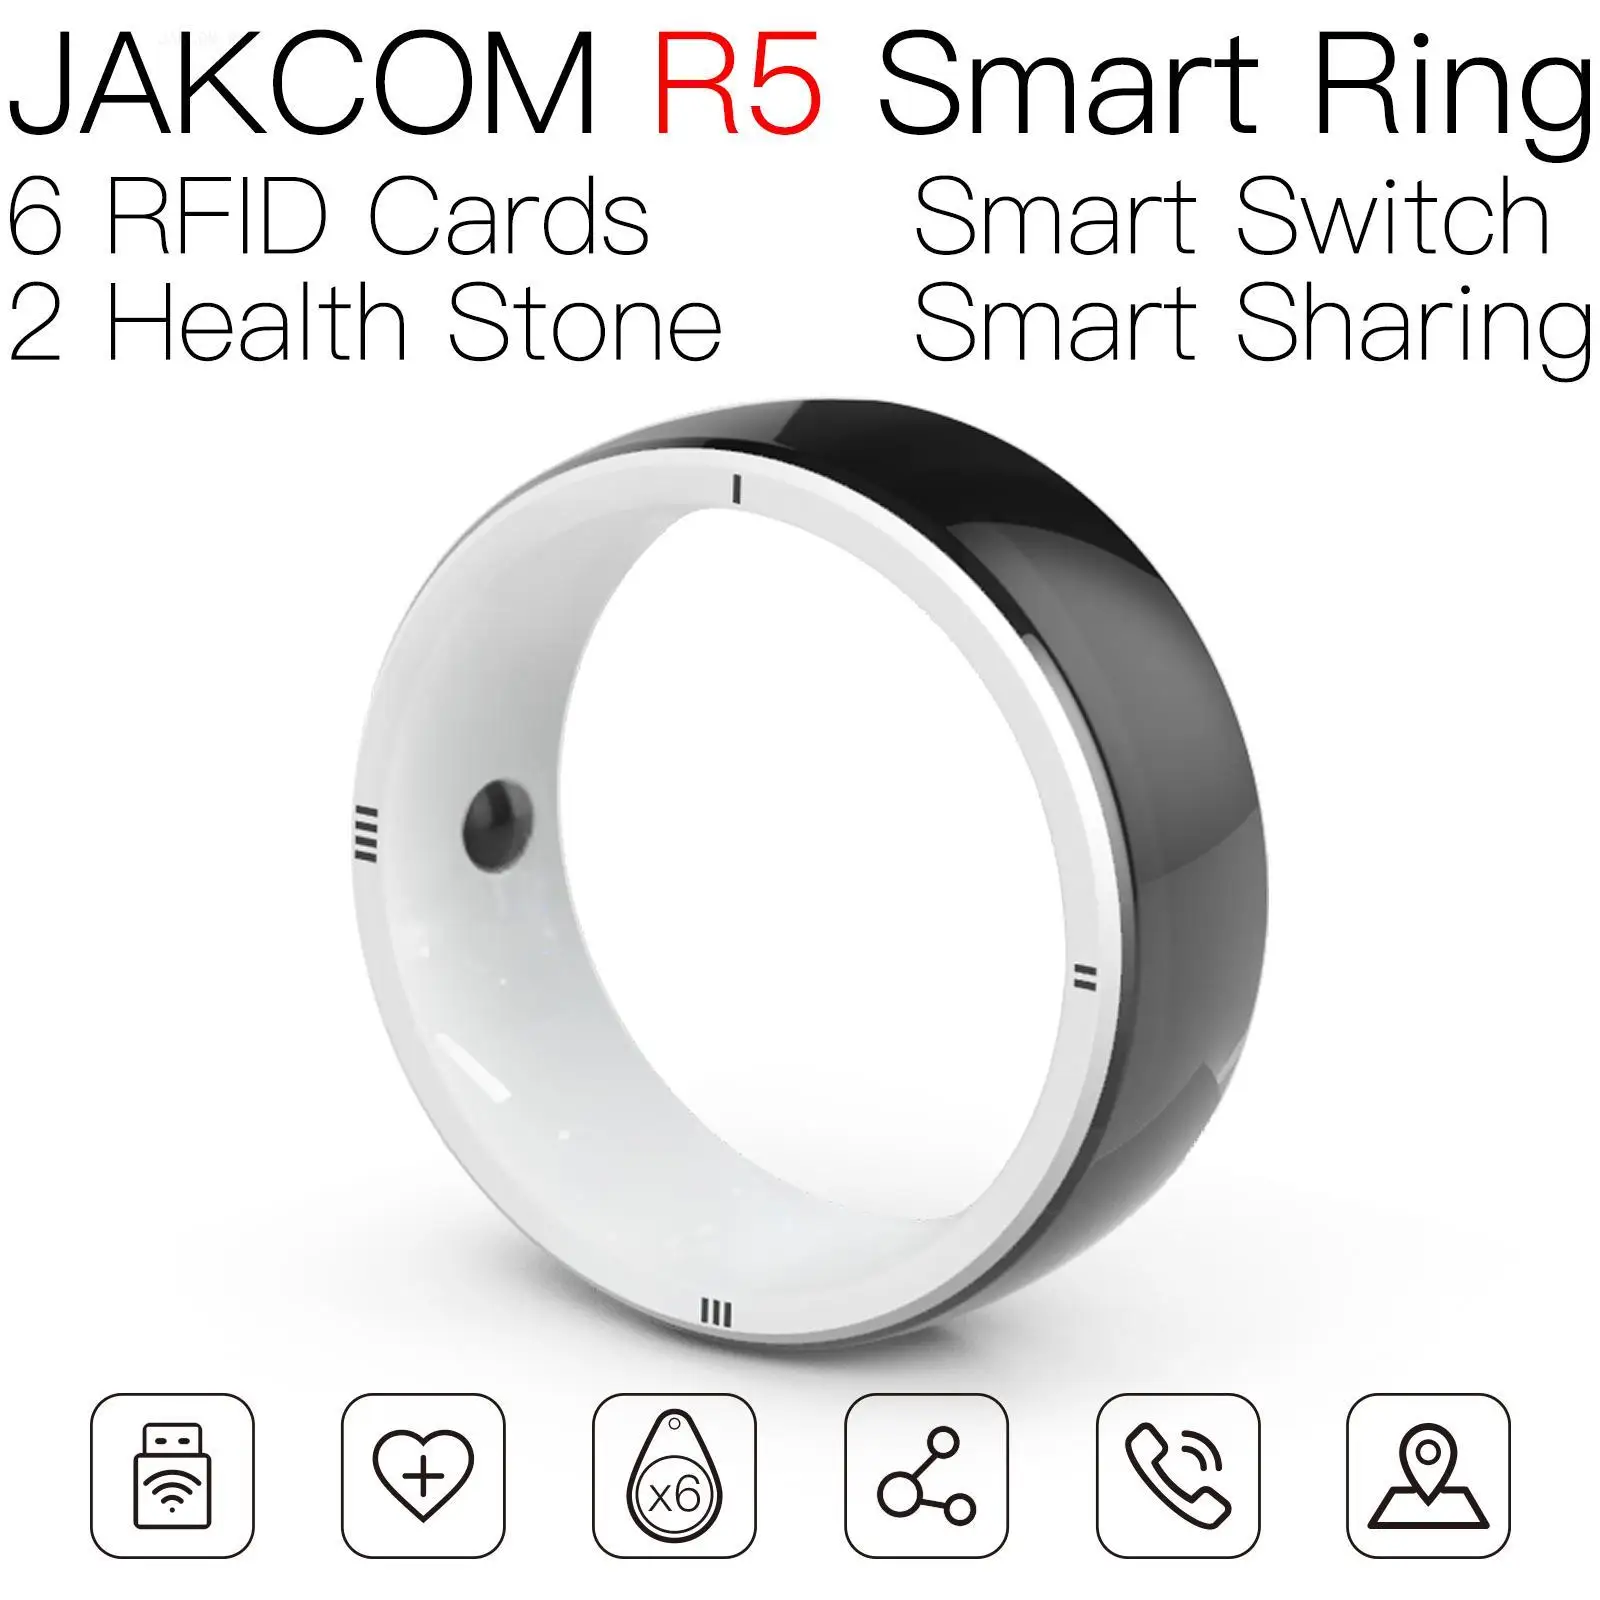 

JAKCOM R5 Smart Ring New product as zigbee mqtt tablet nfc industrial lock with card tools uhf tag 215 mini 125khz rfid tags